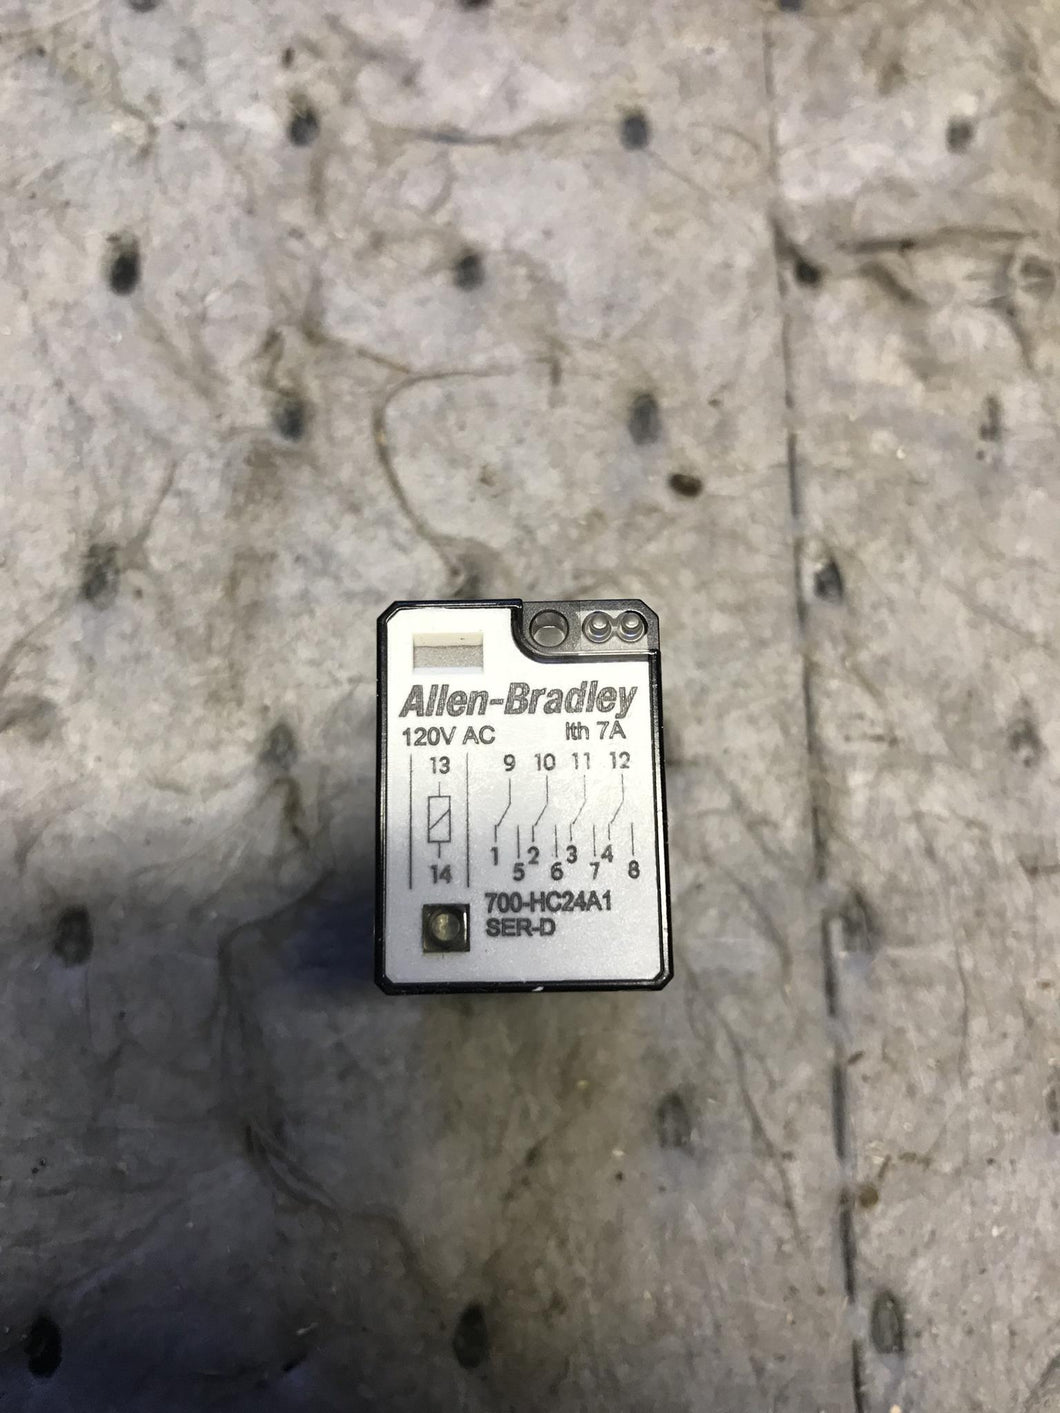 Allen Bradley 700-HC24A1 Relay